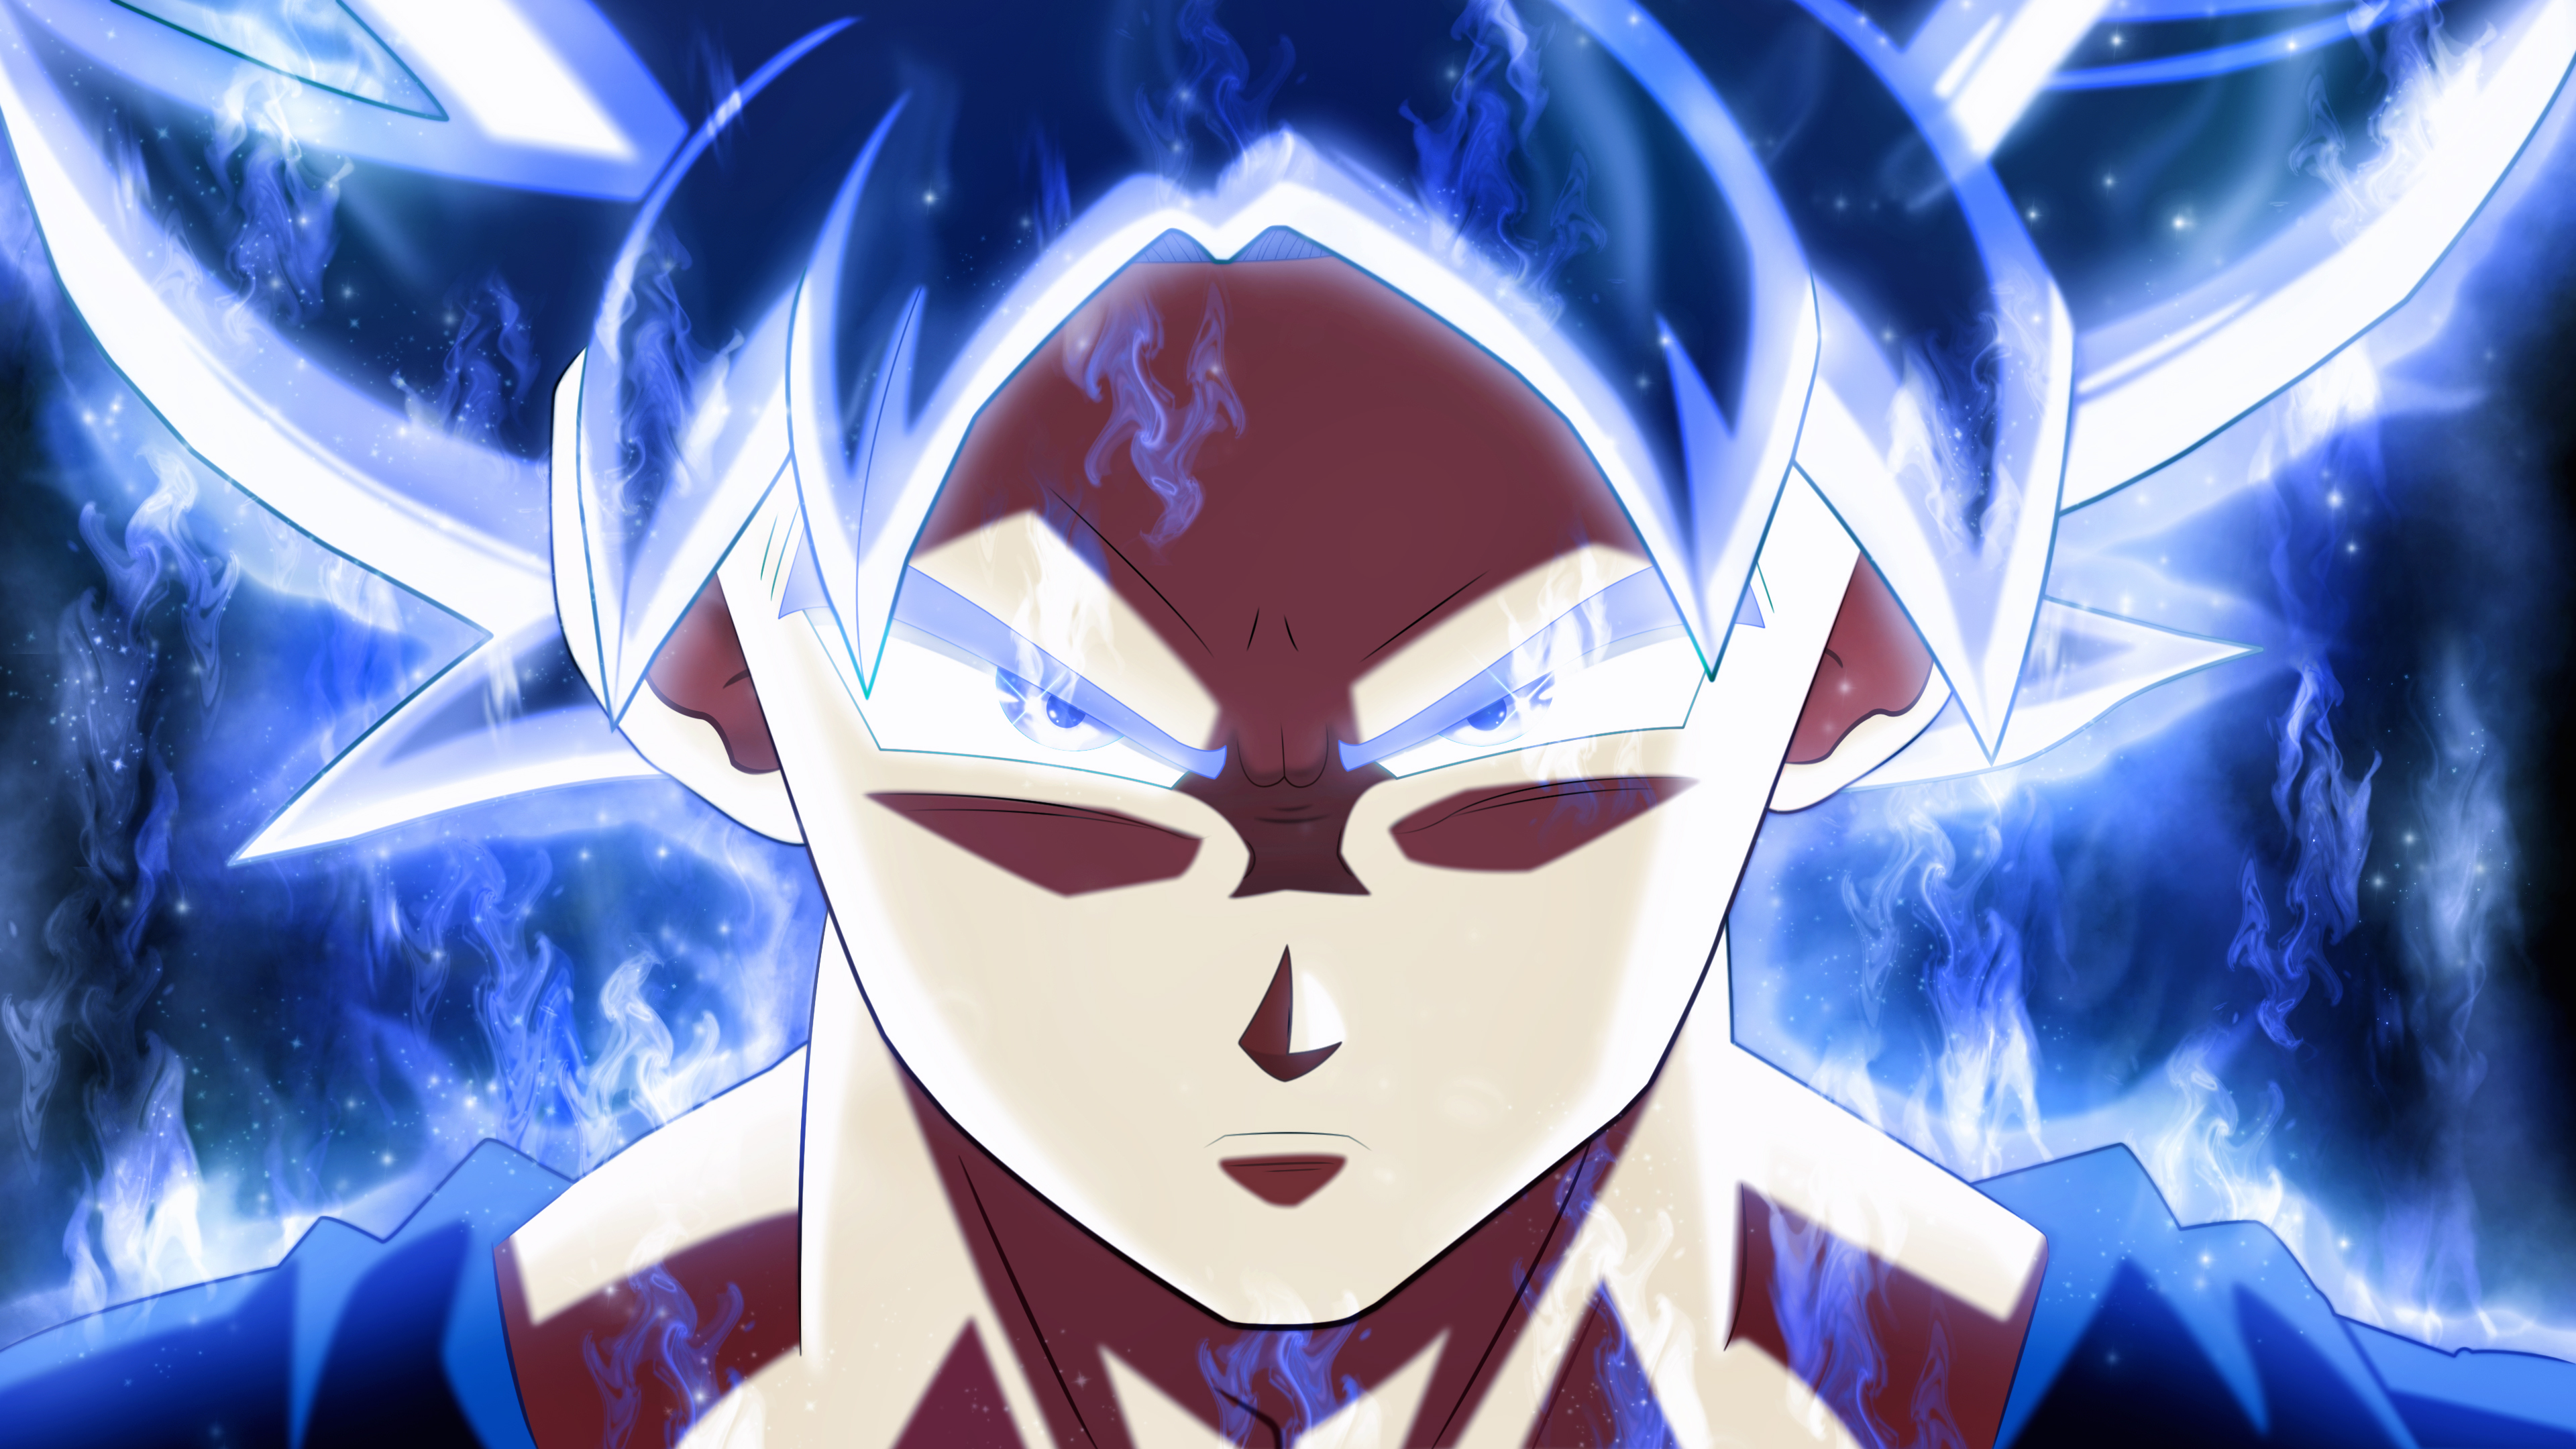 Son Goku Dragon Ball Super 4k, HD Anime, 4k Wallpapers, Images ...